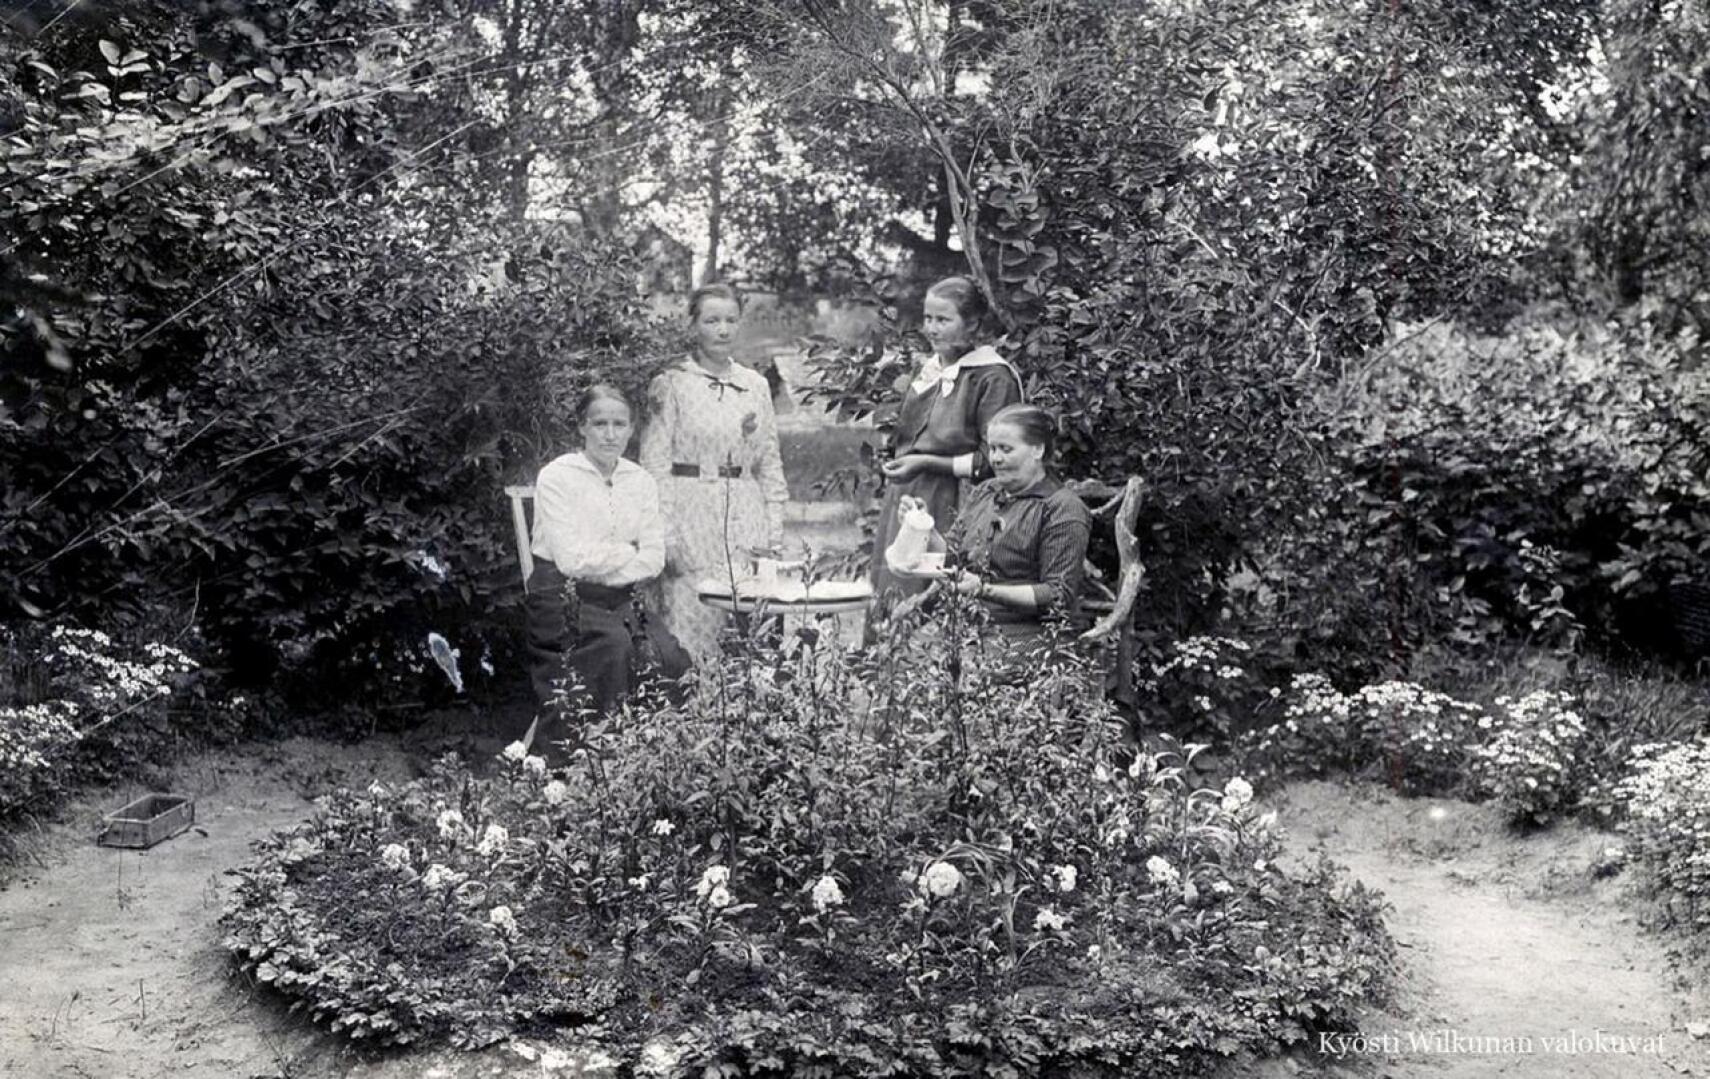 Maikki Kärenlampi istuu kuvassa oikealla taidokkaasti juurakosta valmistetussa tuolissa. Kuva on mahdollisesti otettu hänen puutarhassaan Koivulassa ystävien tai sukulaisten kanssa.  